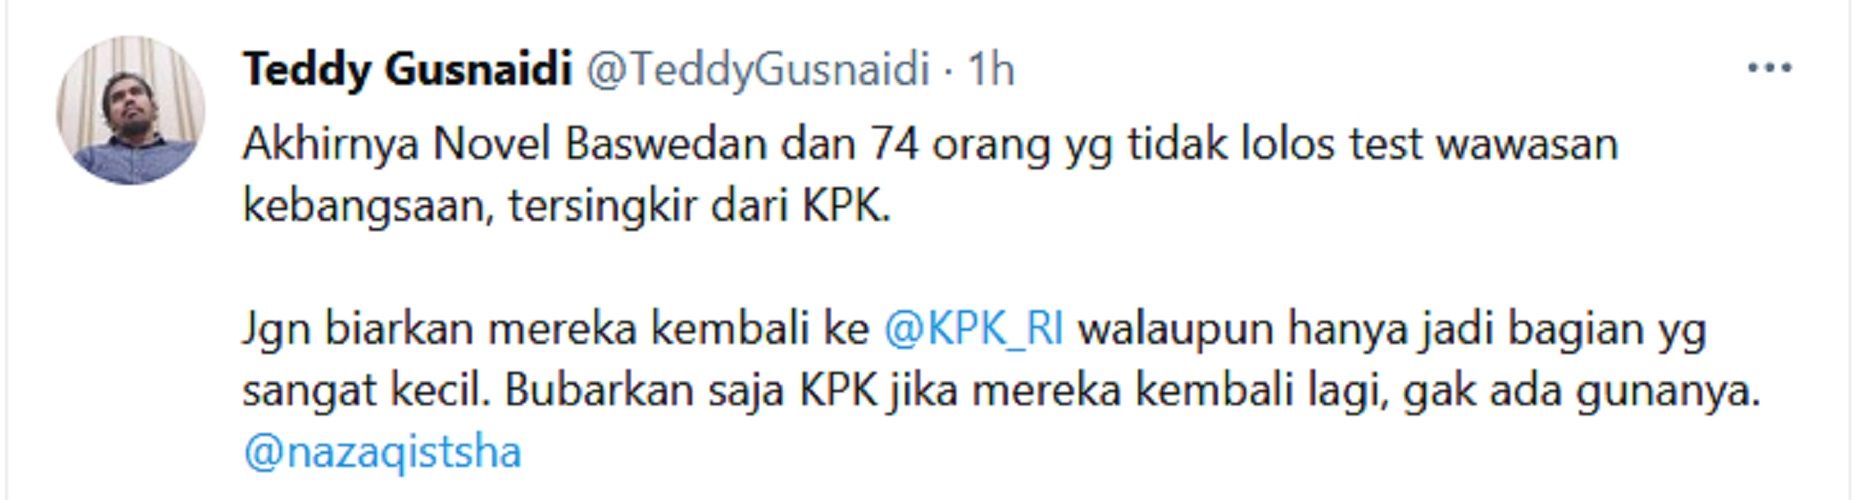 Senang Novel Baswedan Dinonaktifkan, Teddy Gusnaidi: Jangan Biarkan Mereka Kembali ke KPK